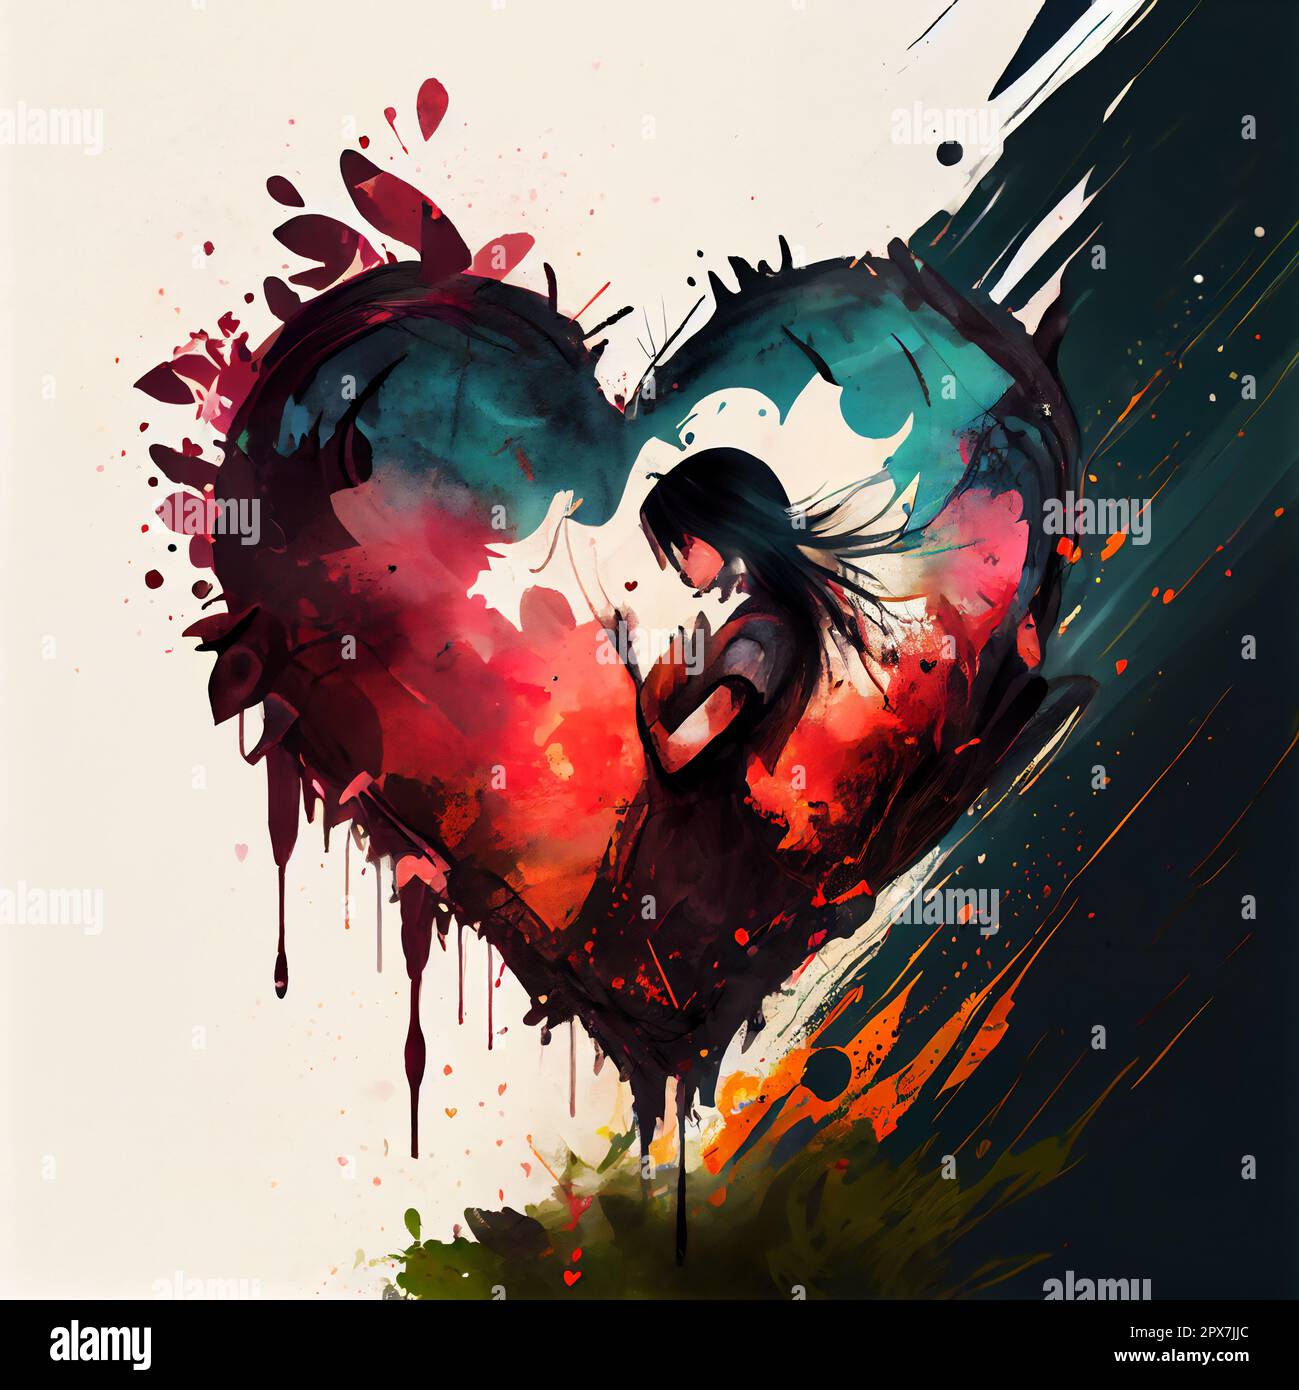 Anime girl in heart shape, illustration art design Stock Photo - Alamy